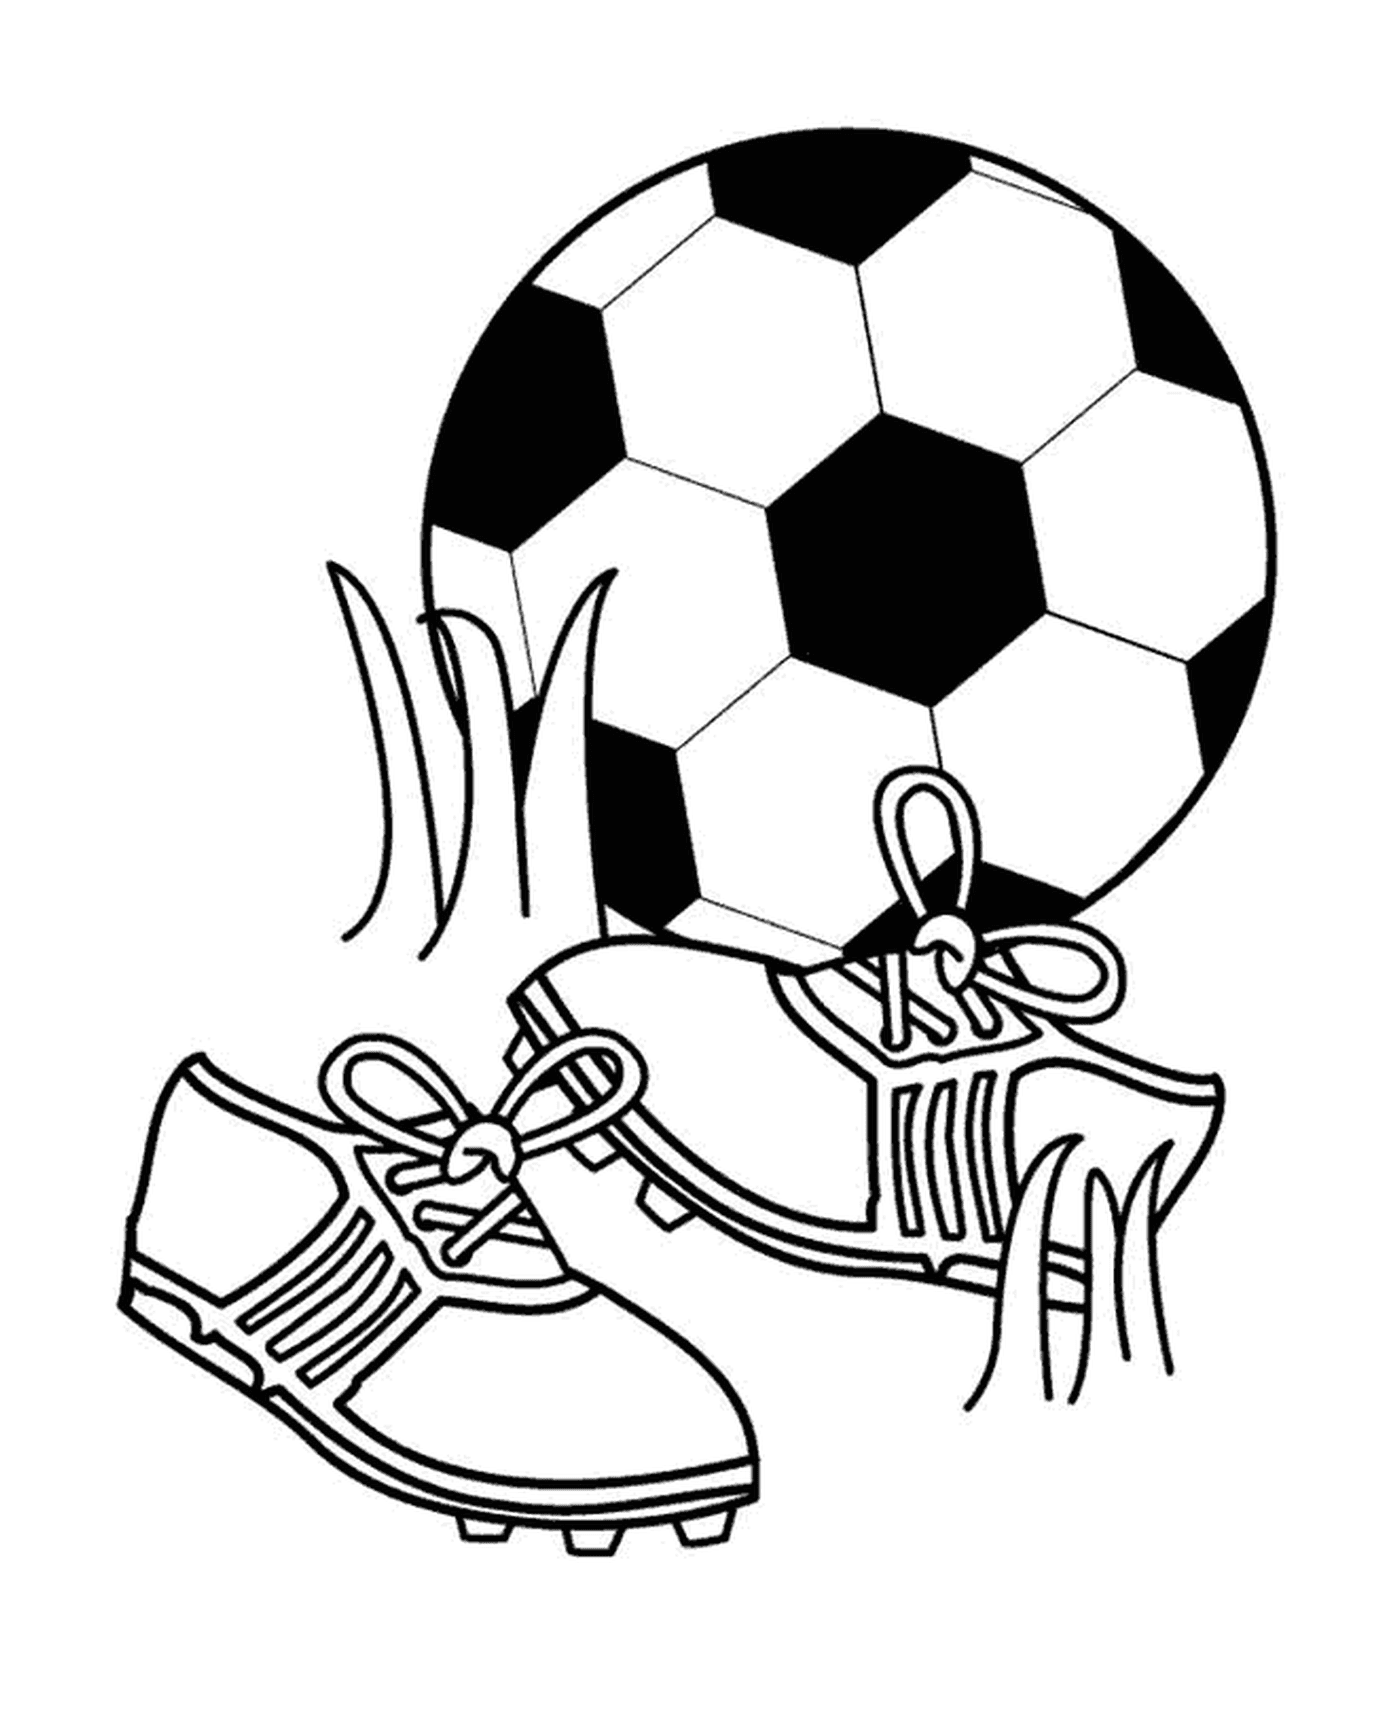  Esporte, futebol e calçado 